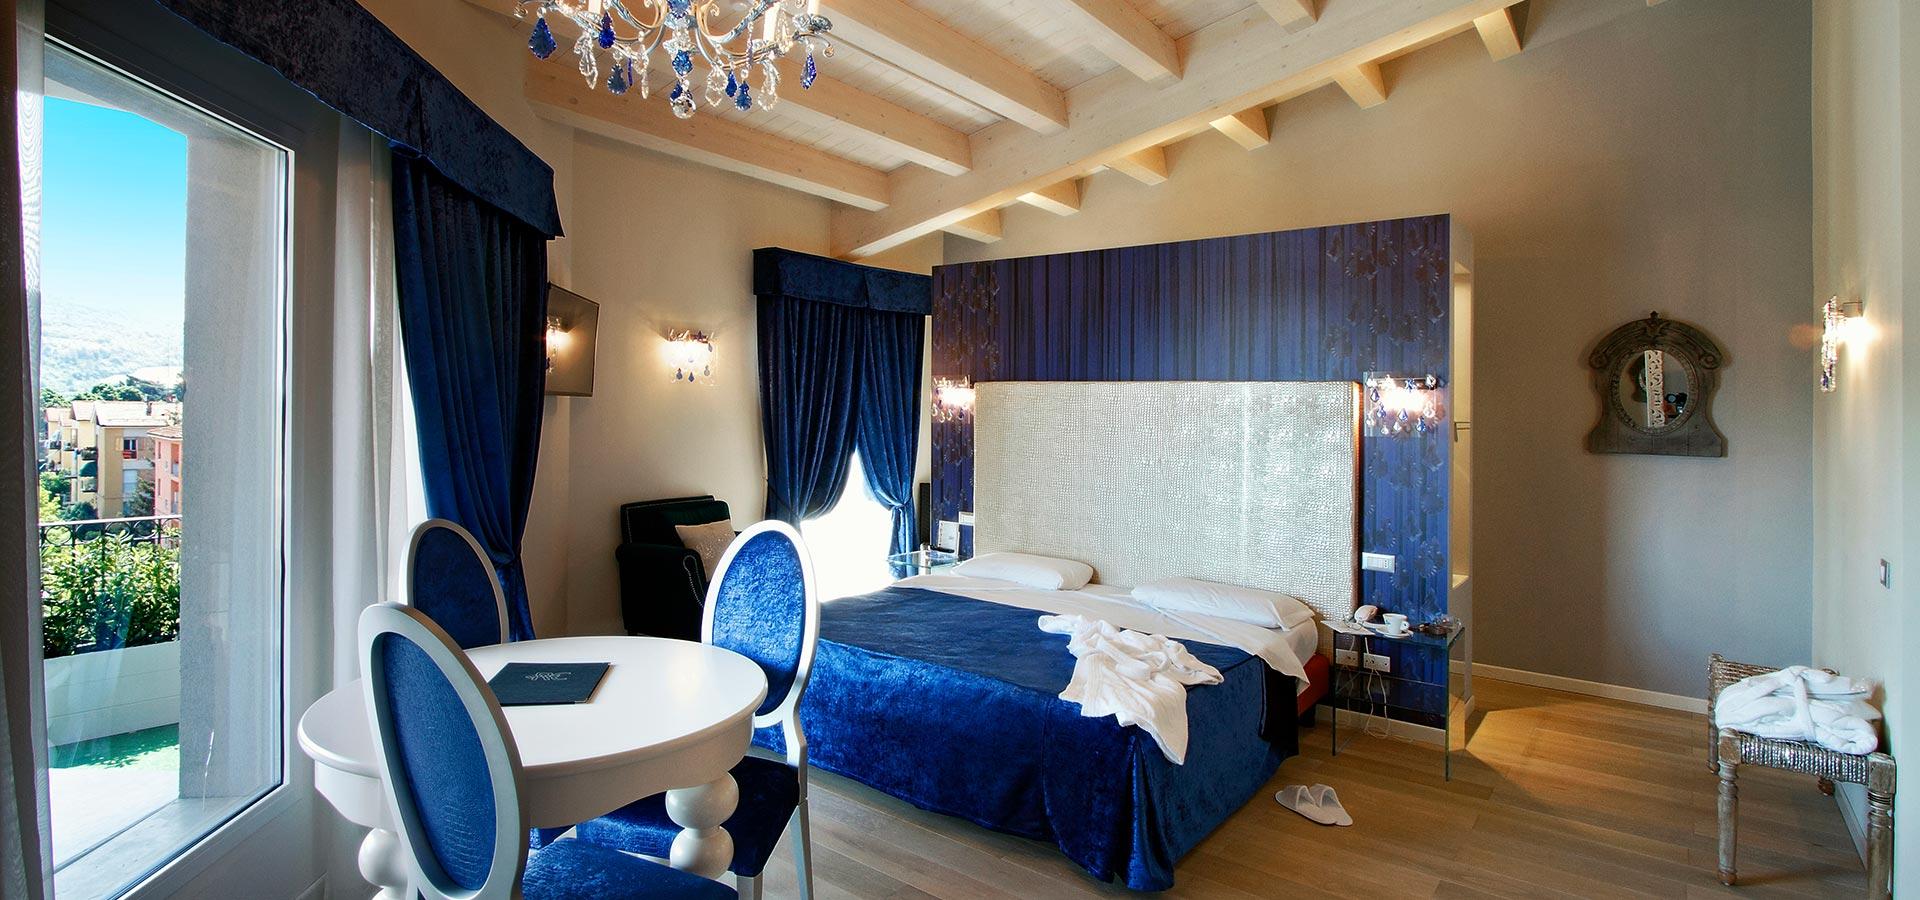 hotelcalzavecchio en rooms 031